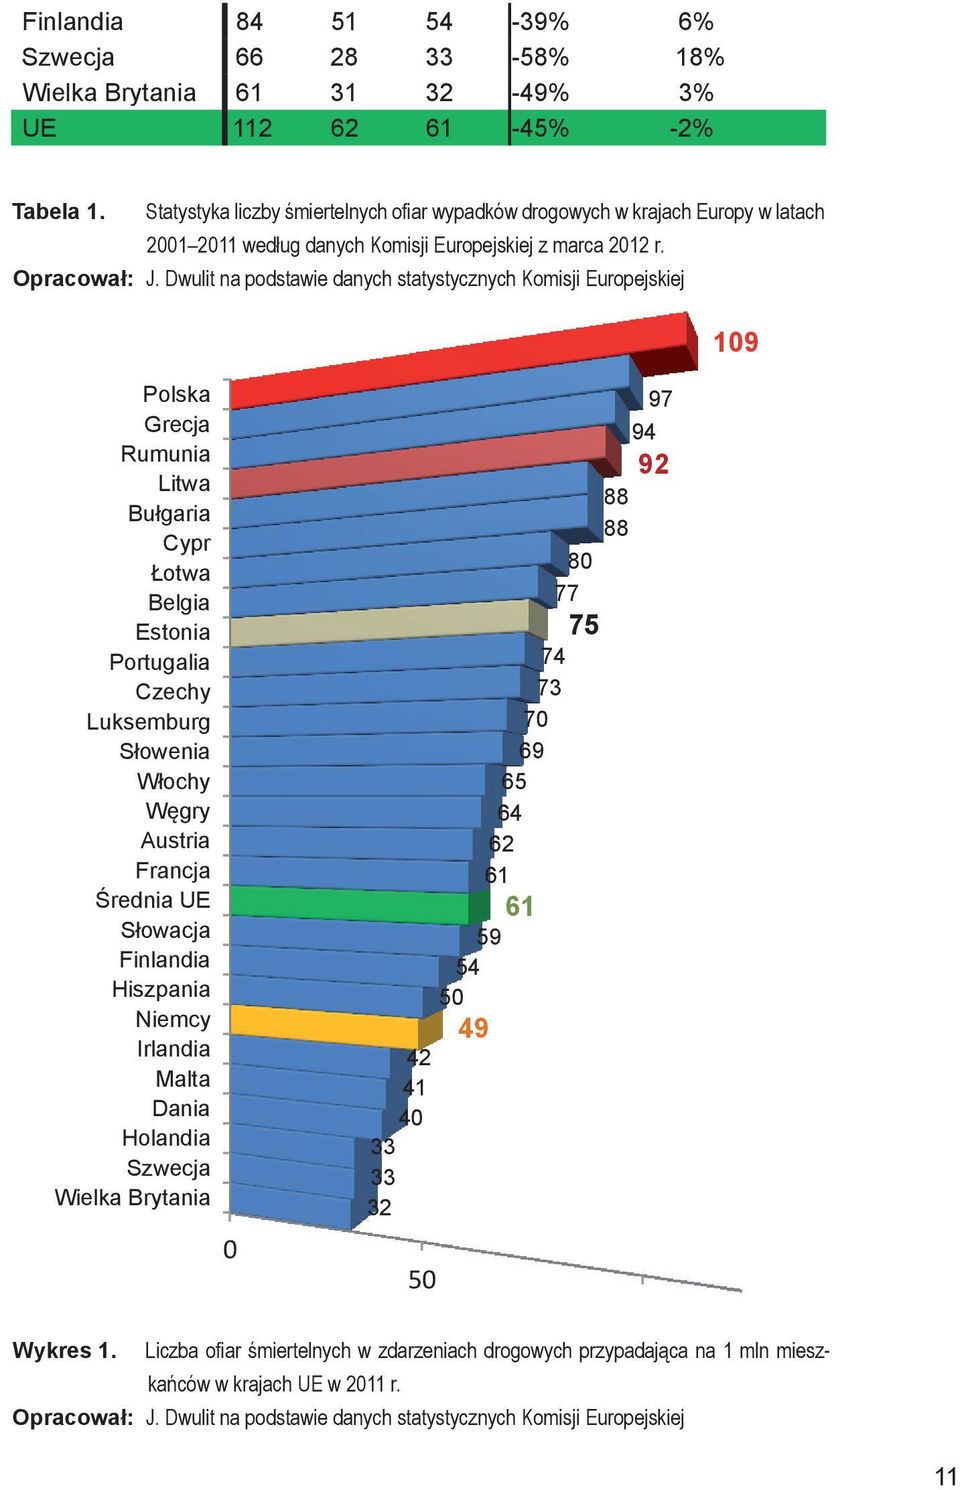 Dwulit na podstawie danych statystycznych Komisji Europejskiej Polska Grecja Rumunia Litwa Bułgaria Cypr Łotwa Belgia Estonia Portugalia Czechy Luksemburg Słowenia Włochy Węgry Austria Francja